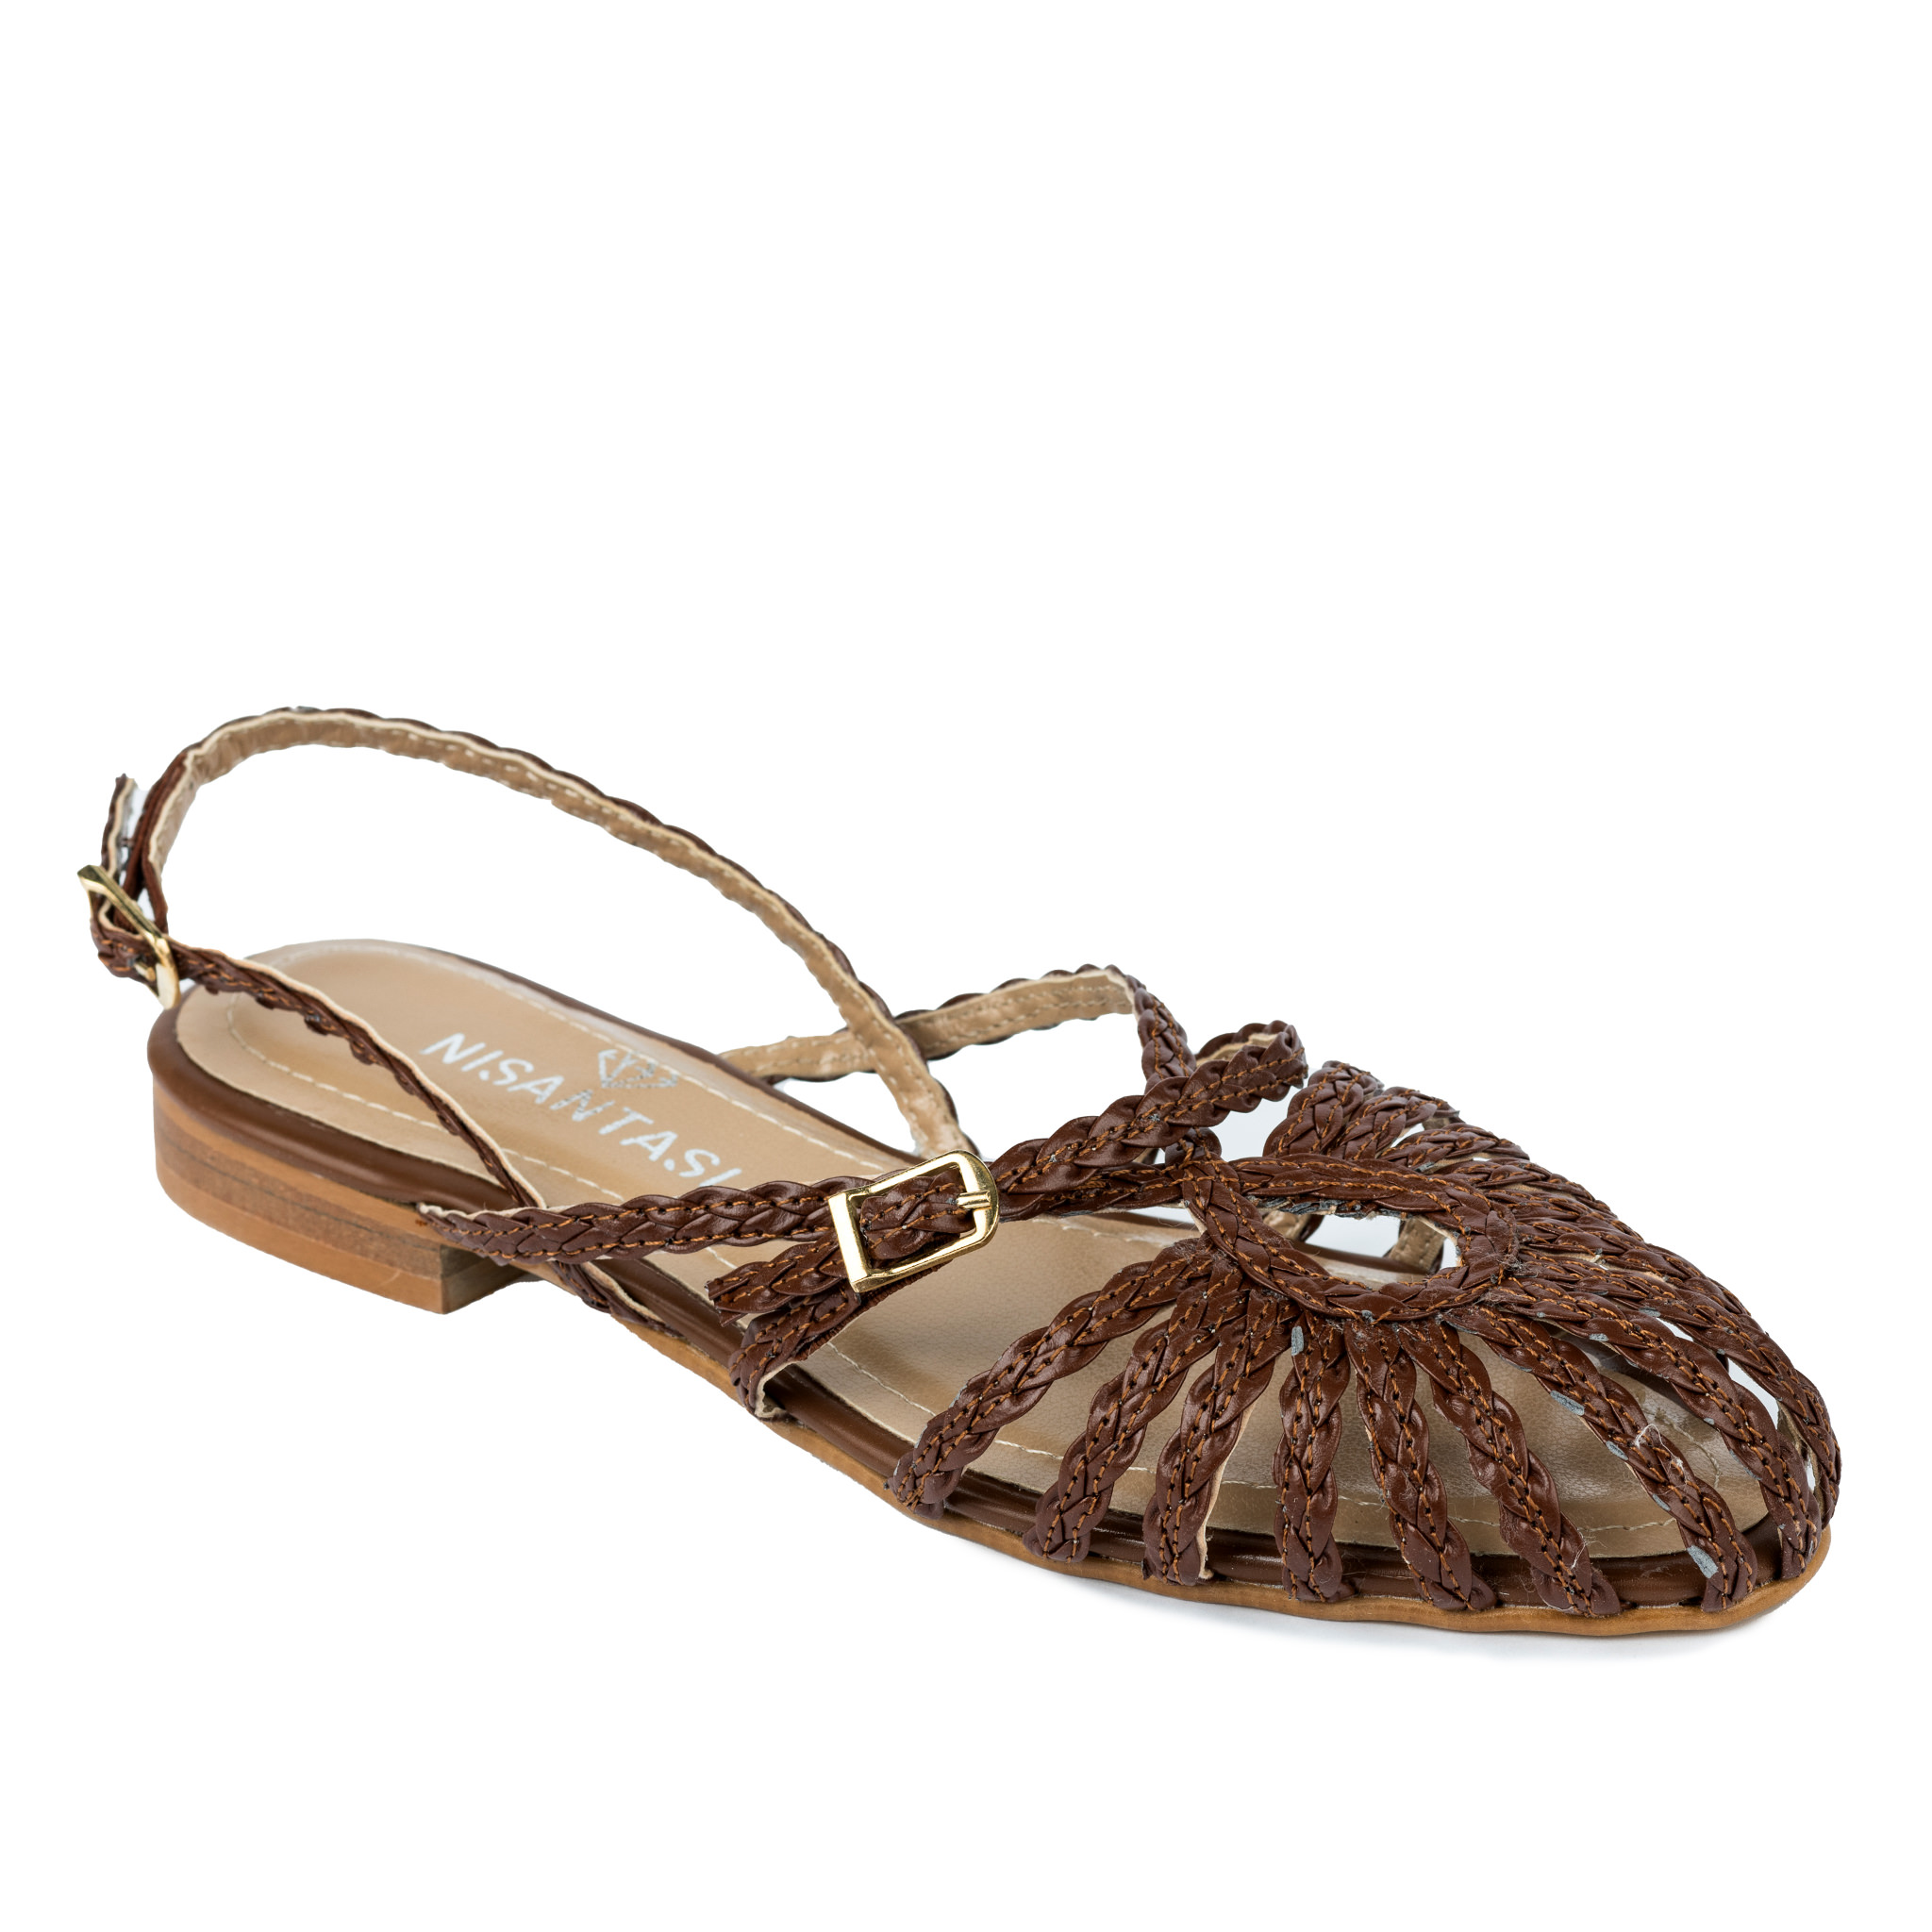 Women sandals A156 - BROWN